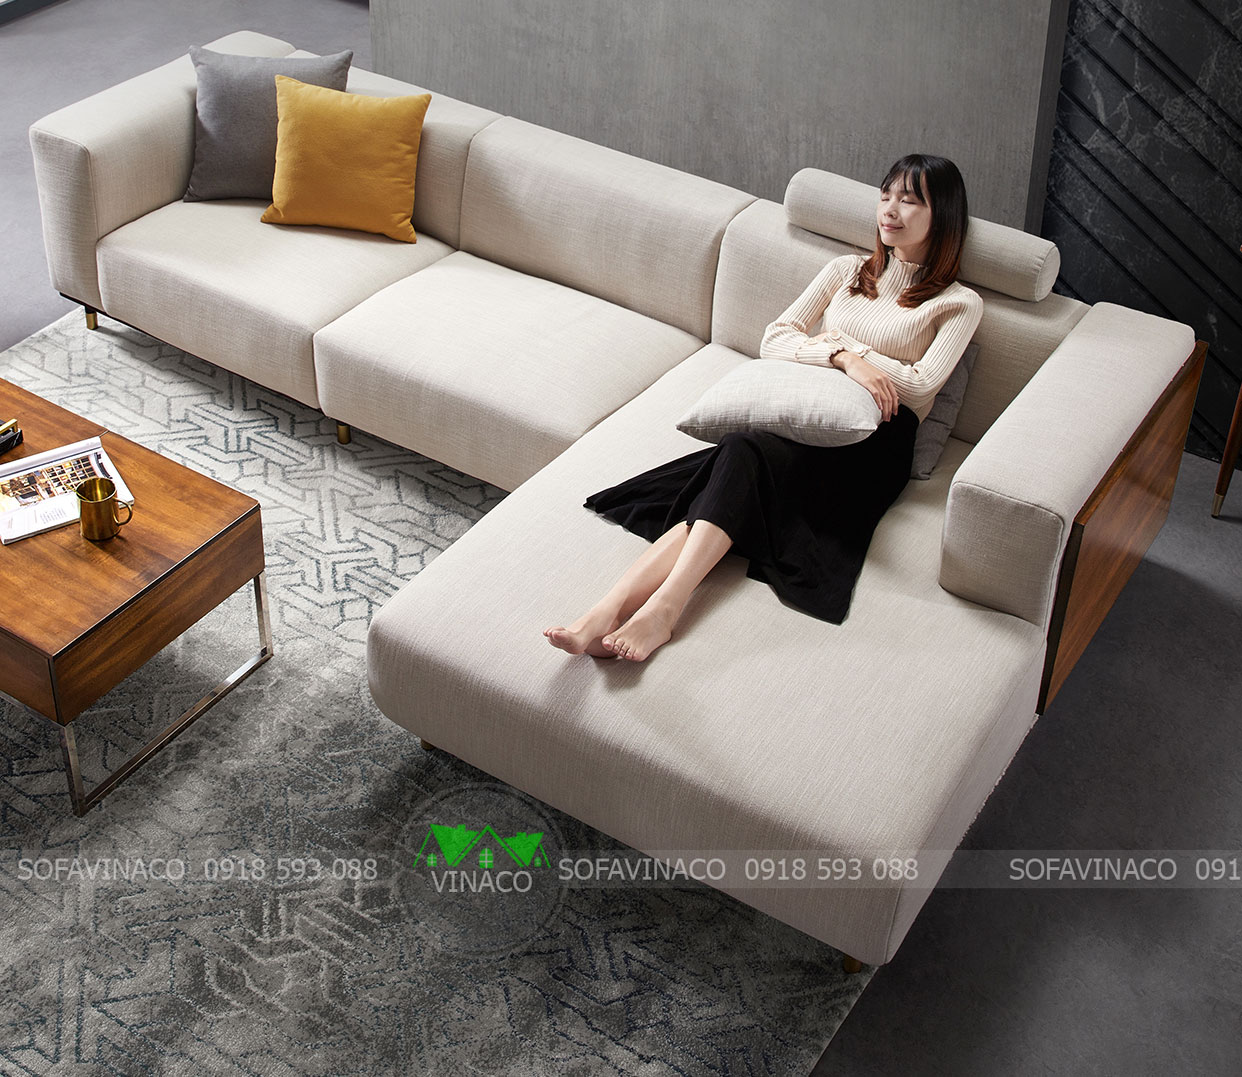 Hãy vệ sinh và bảo quản đệm ghế để có một bộ sofa tốt nhất cho gia đình